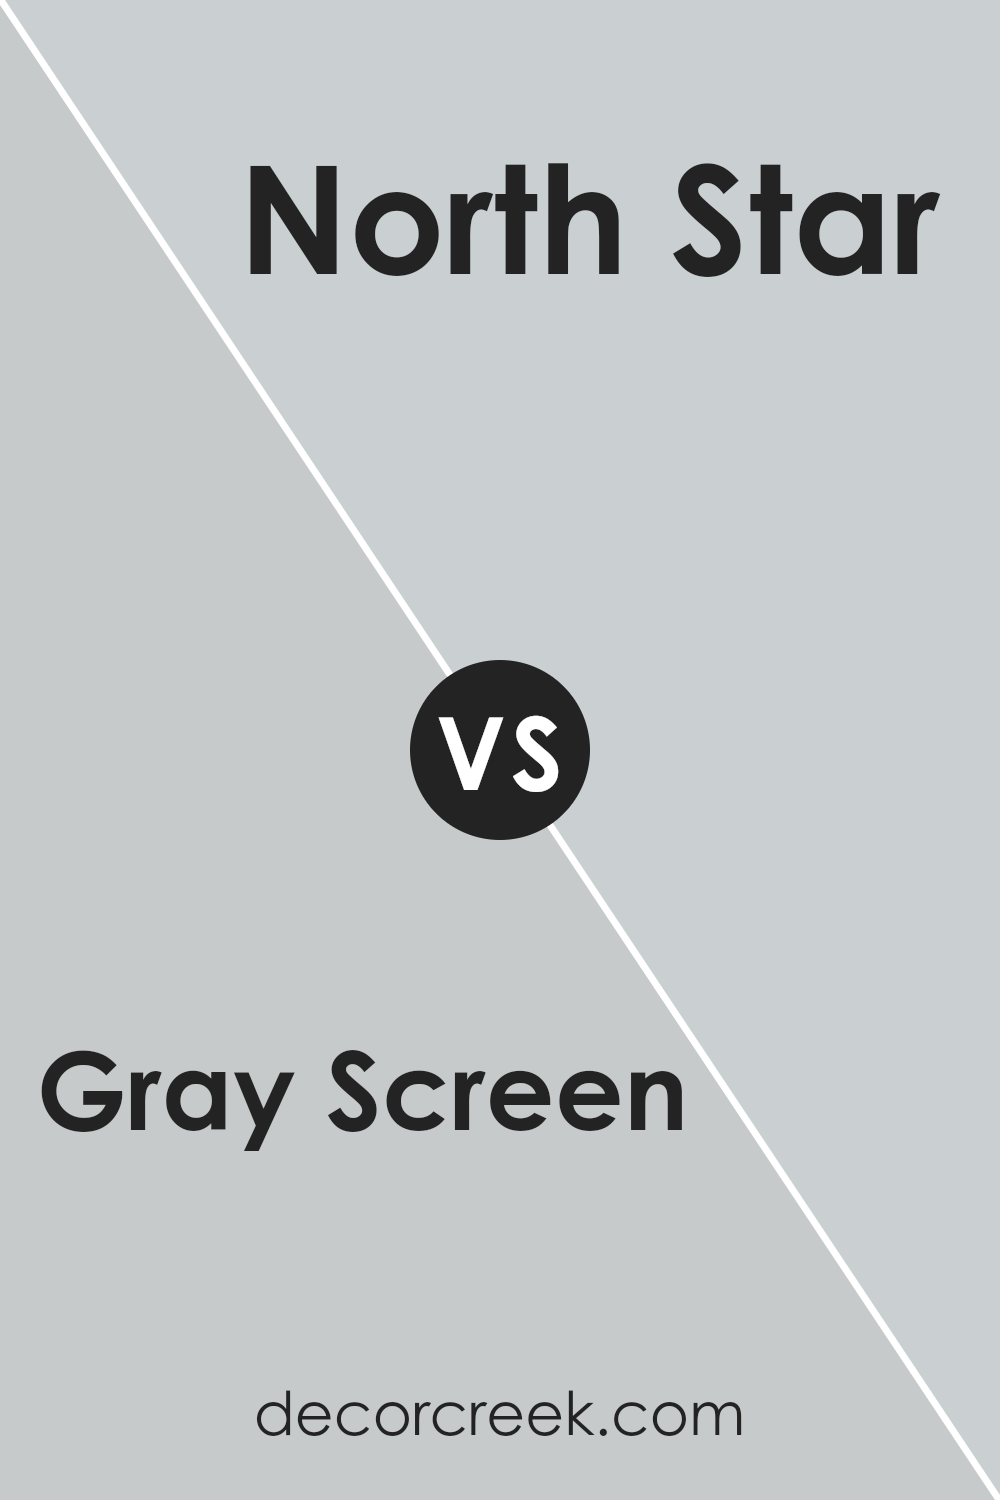 gray_screen_sw_7071_vs_north_star_sw_6246